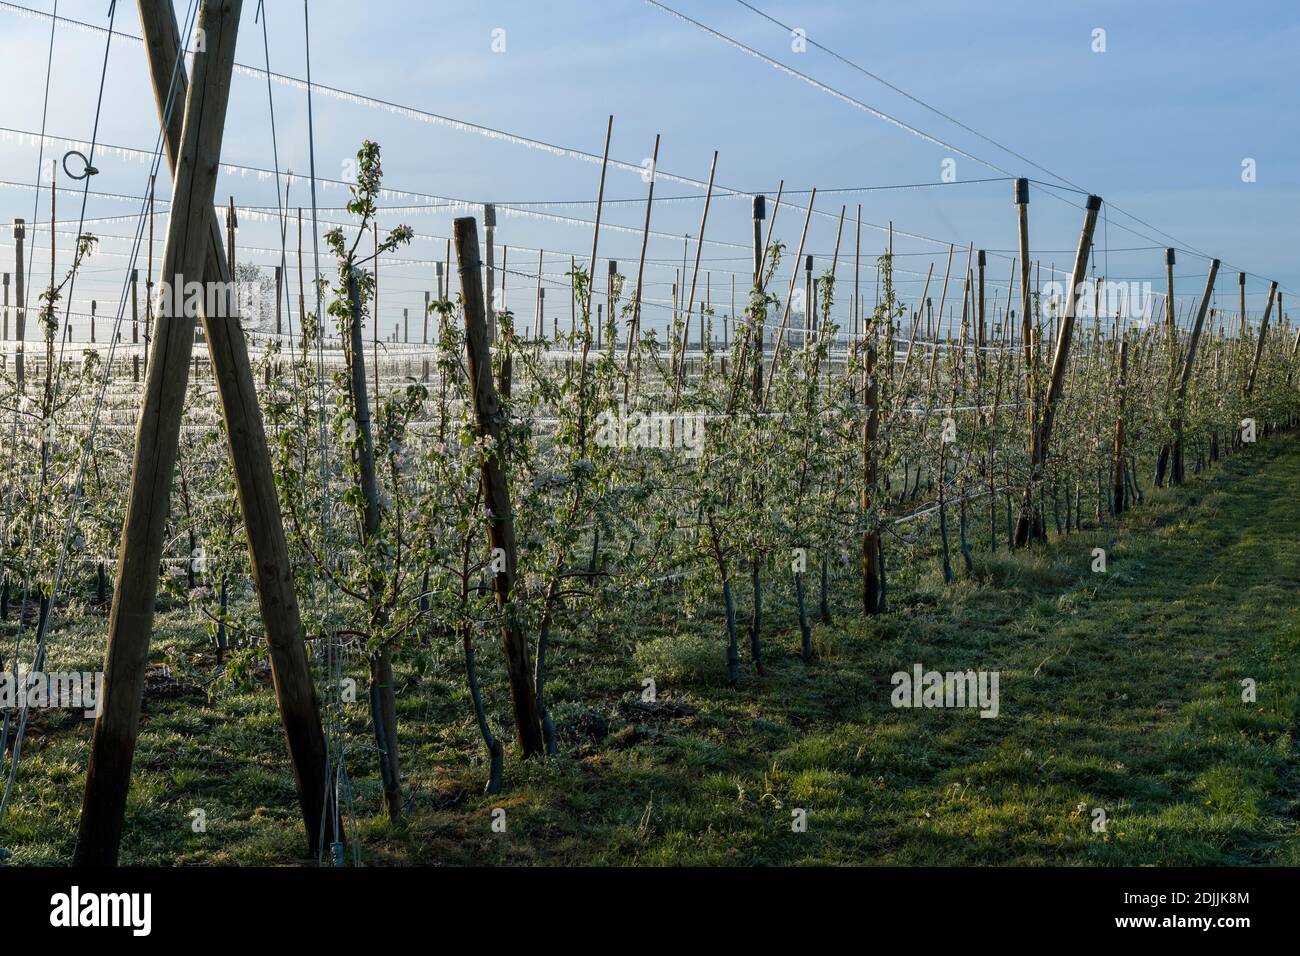 Plantation de pommes, arbres fruitiers, arrosage par le gel, ferme fruitière Puder, Laumersheim, Palatinat, Allemagne Banque D'Images